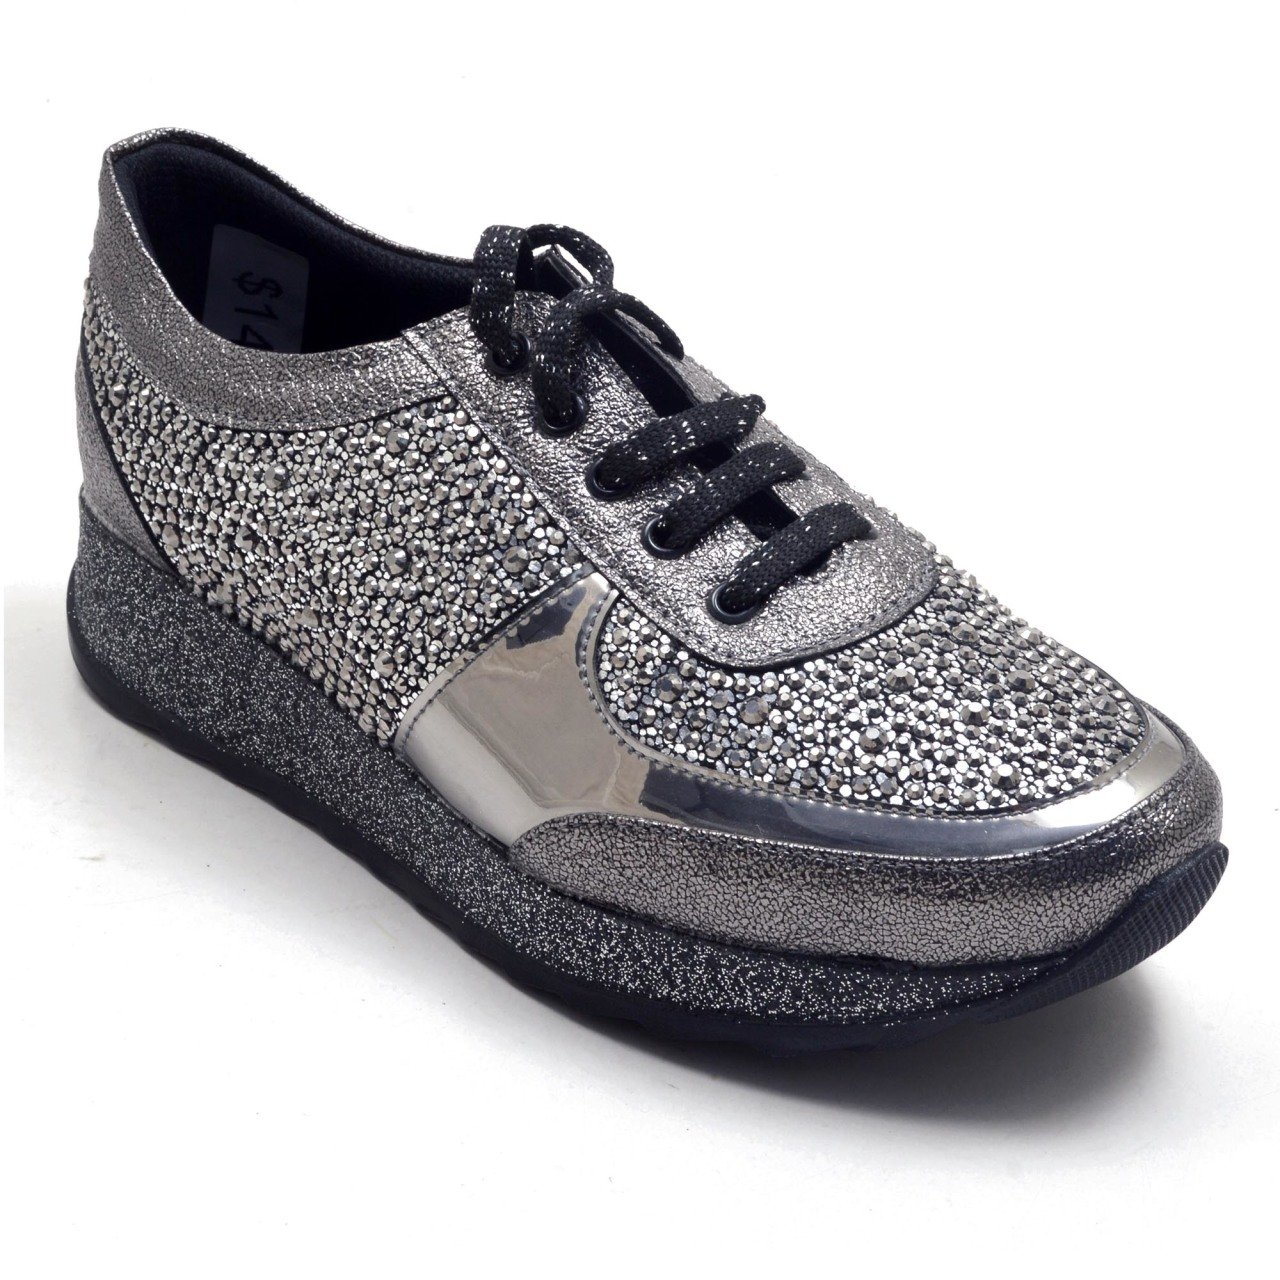 435-GUD Taşlı Spor Model Kadın Ayakkabı - Gri